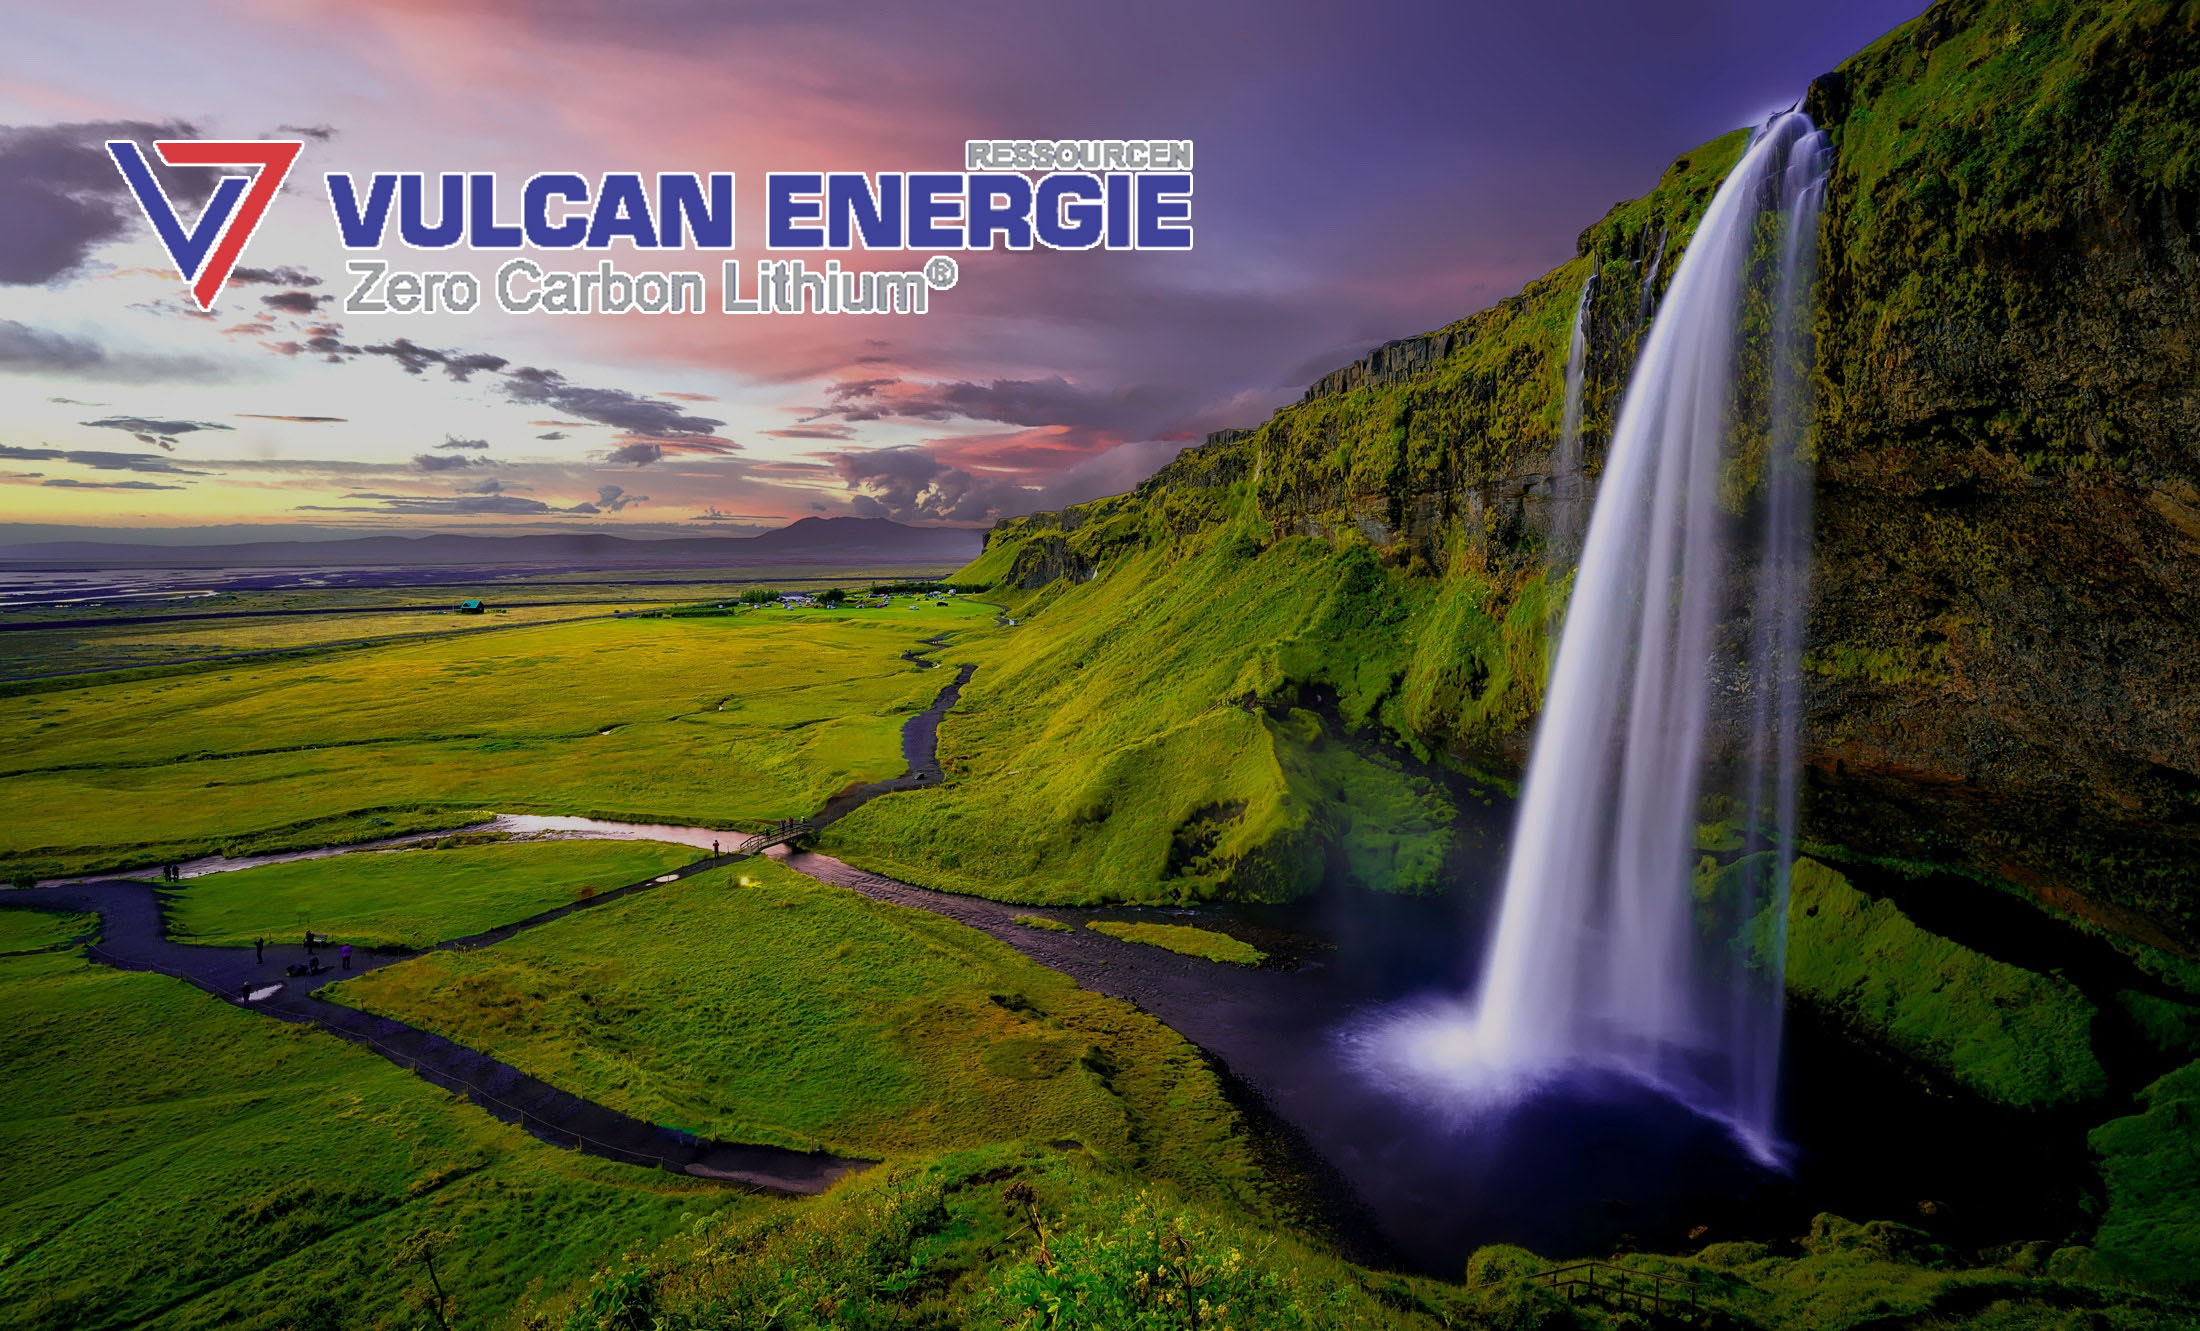 Renault, 5 Yıl Vulcan Energy’den Lityum Tedarik Edecek